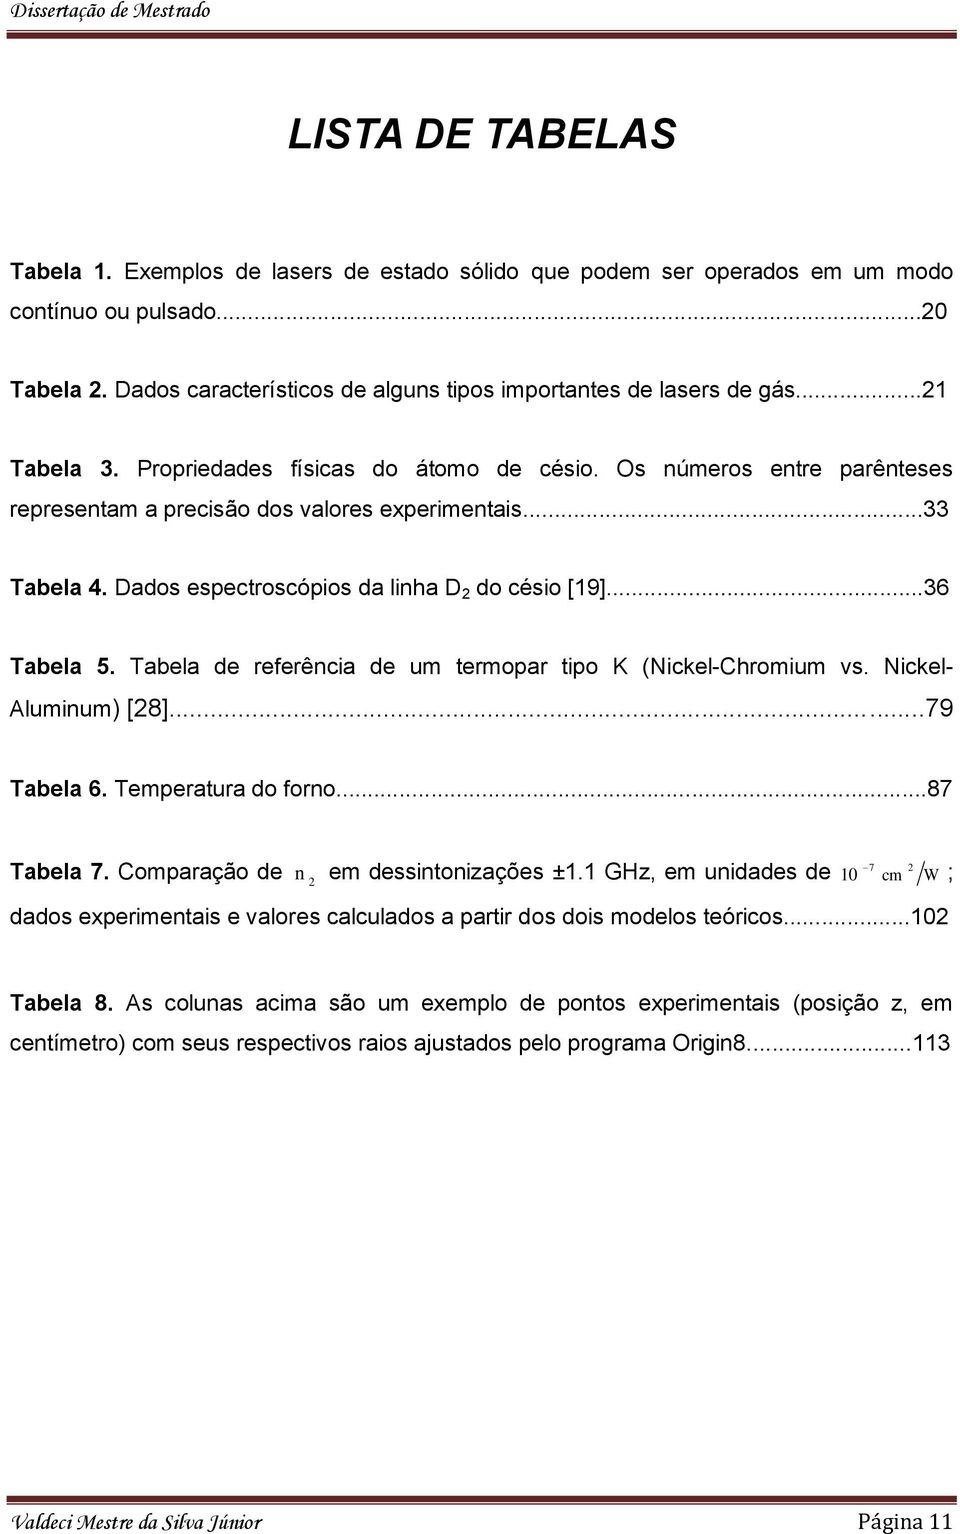 ..36 Tabela 5. Tabela de referência de um termopar tipo K (Nickel-Chromium vs. Nickel- Aluminum) [8]...79 Tabela 6. Temperatura do forno...87 Tabela 7. Comparação de n em dessintoniações ±1.